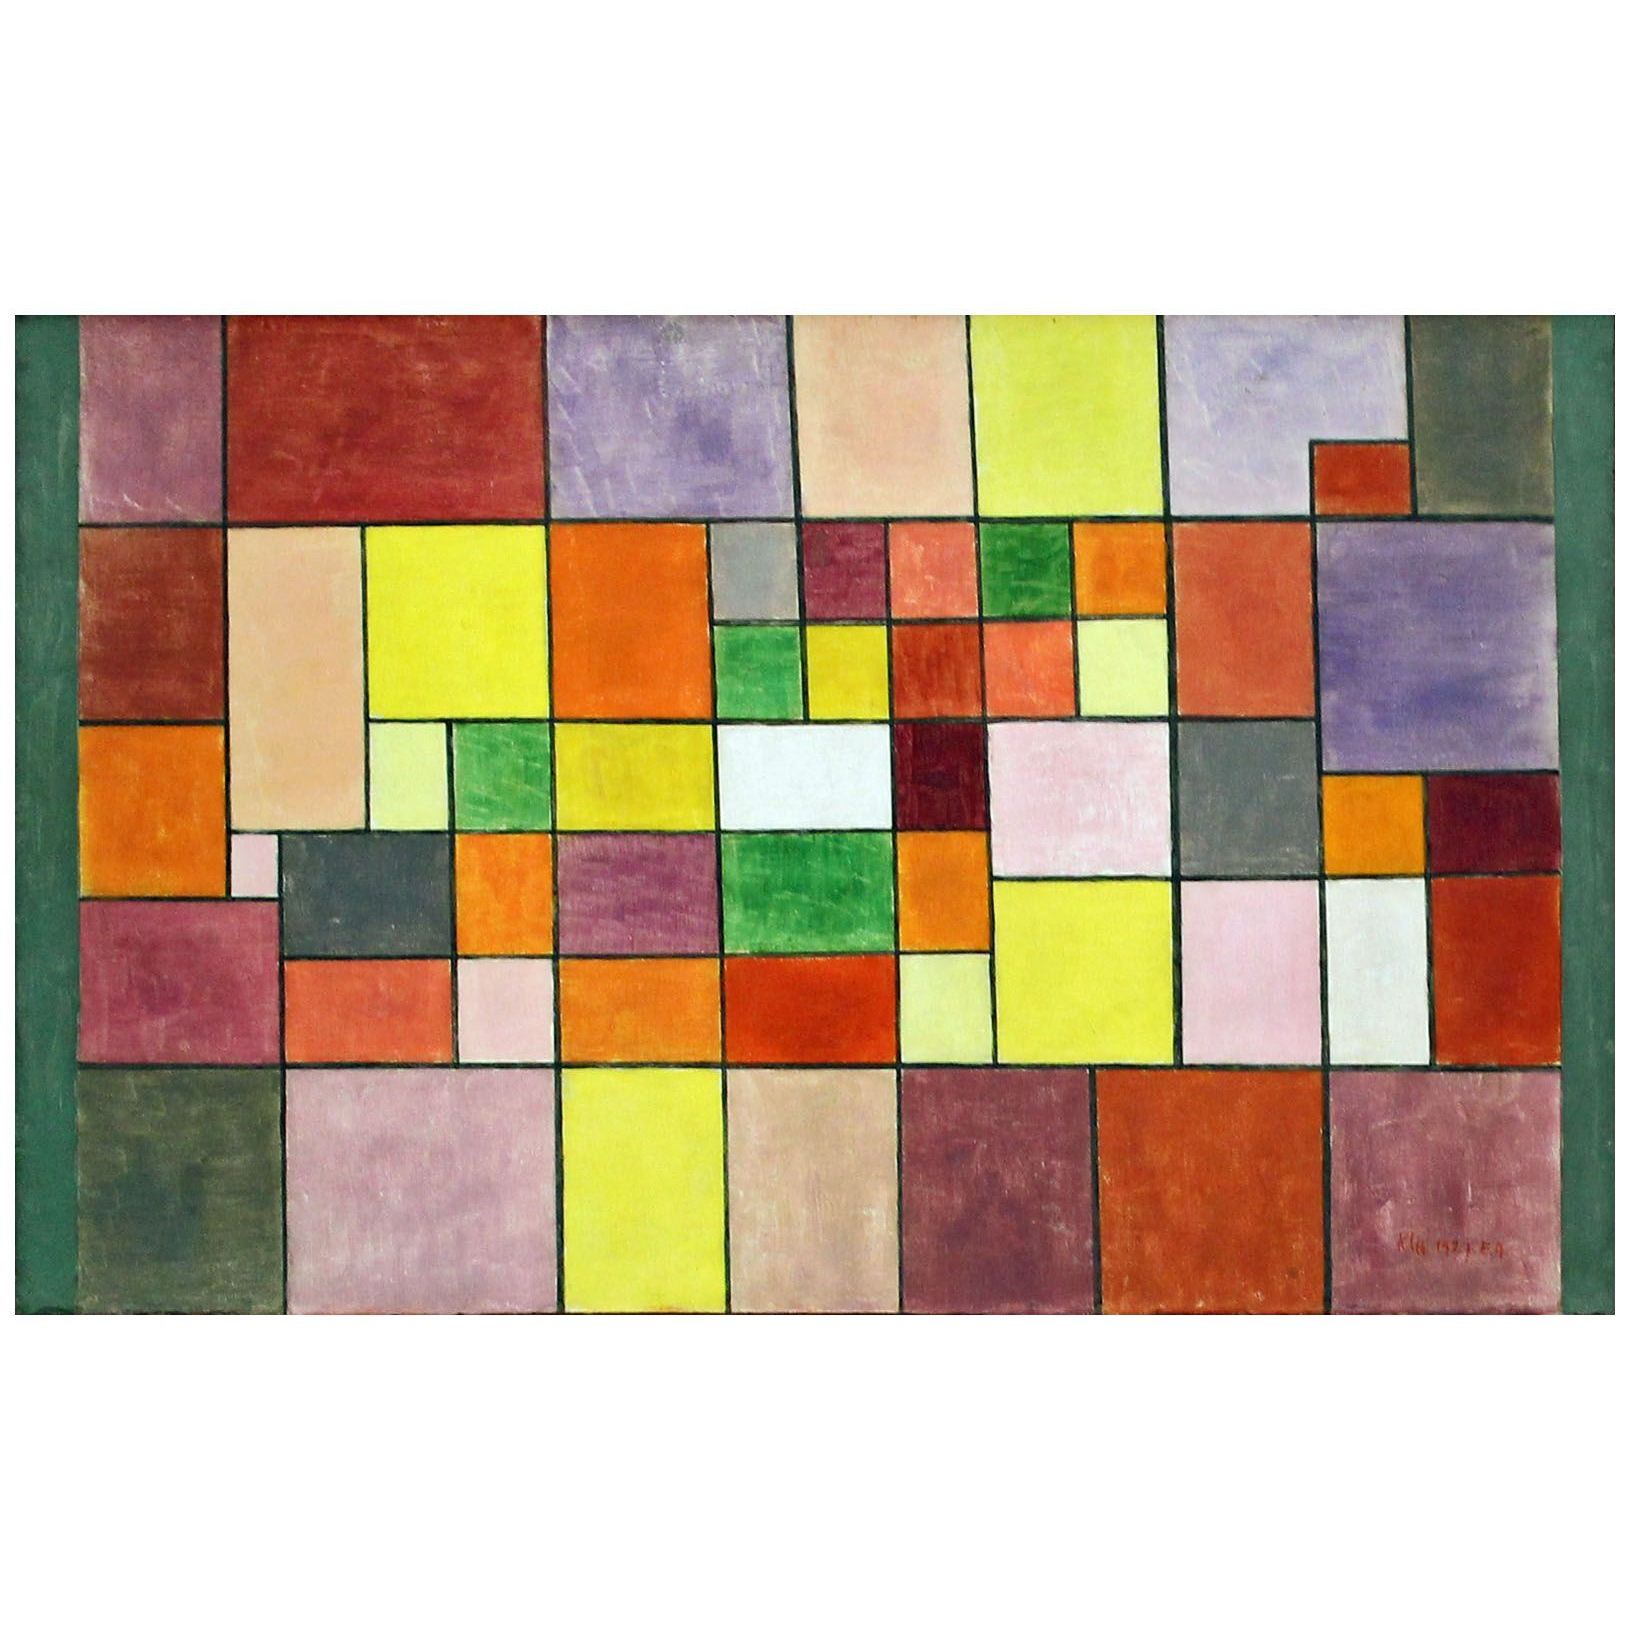 Paul Klee. Harmonie der nordlichen Flora. 1927. Zentrum Paul Klee, Bern